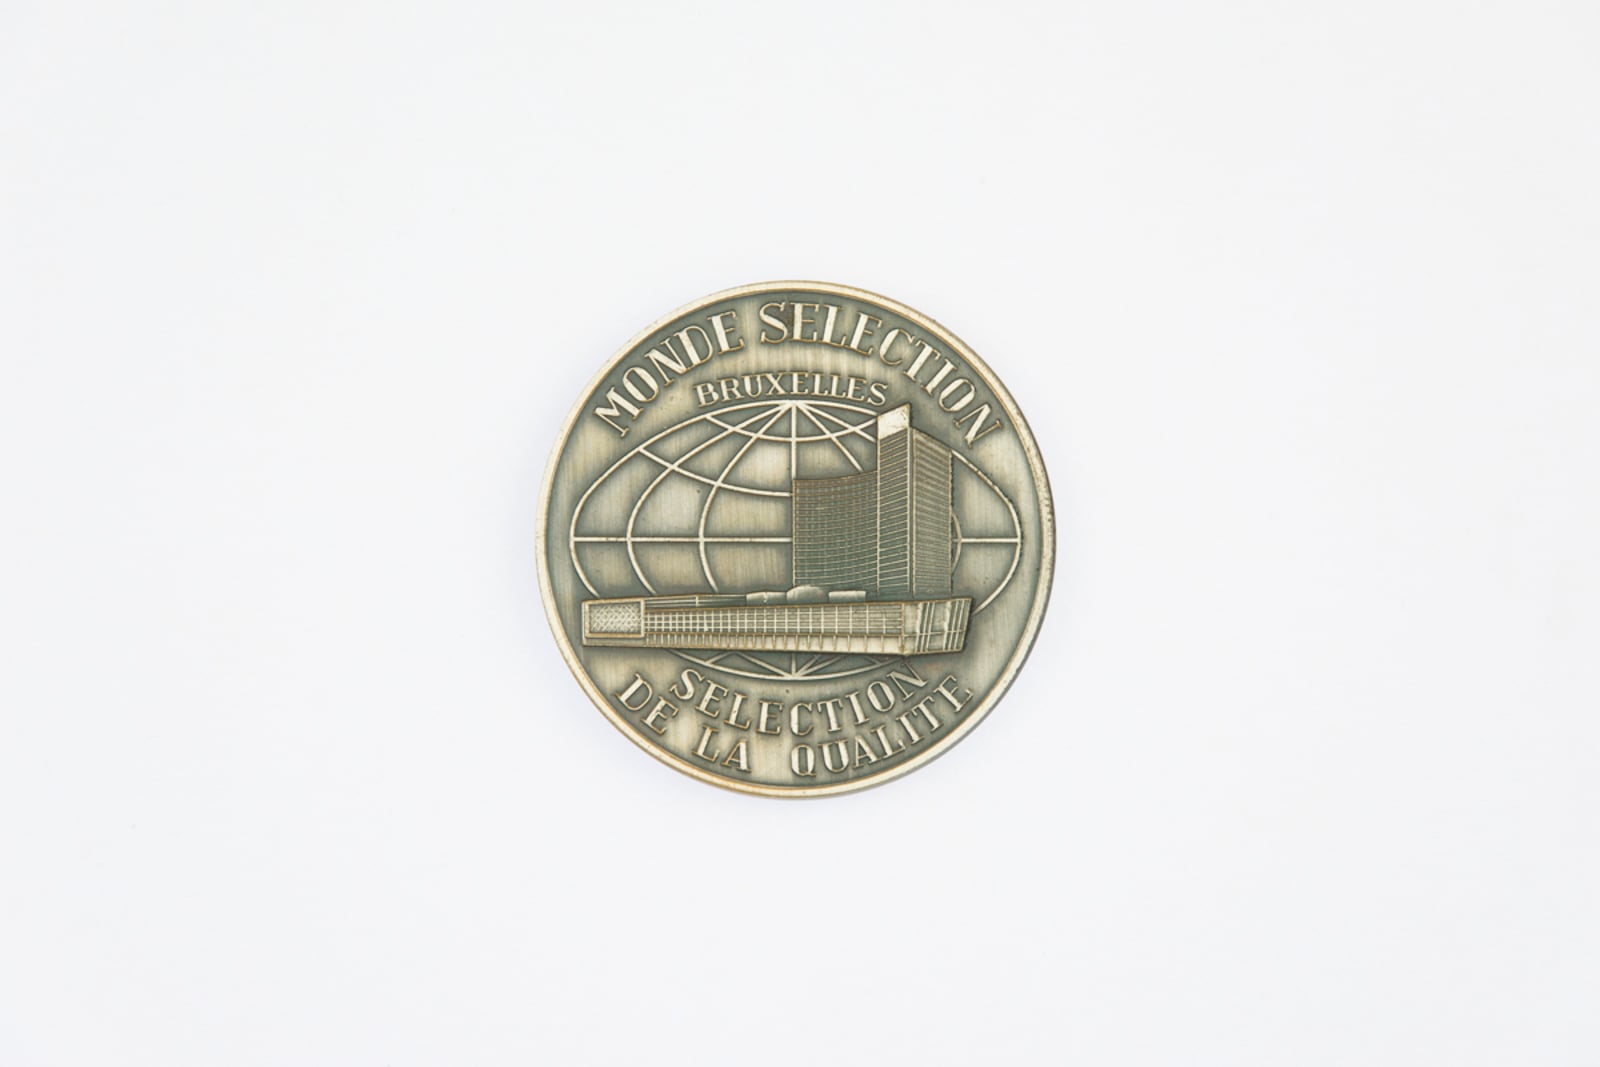 Monde Selection Bruxelles, Medaille d'Argent 1979